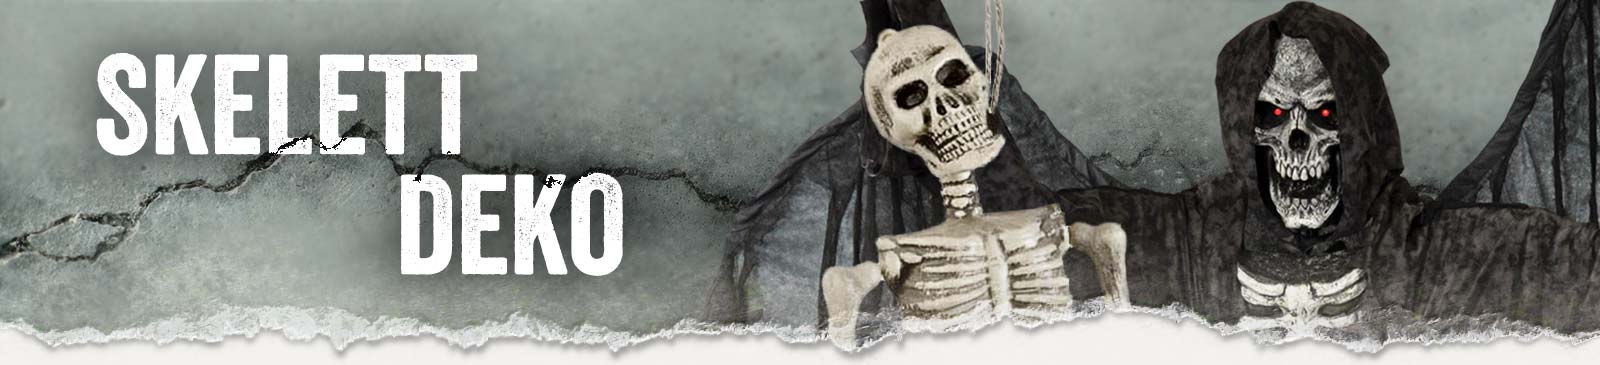 NEU Halloween-Deko Skelett mit Fetzenkutte, ca. 180cm, mit leuchtenden  Augen - Halloween Figuren & Groß-Deko Halloween Produkte 